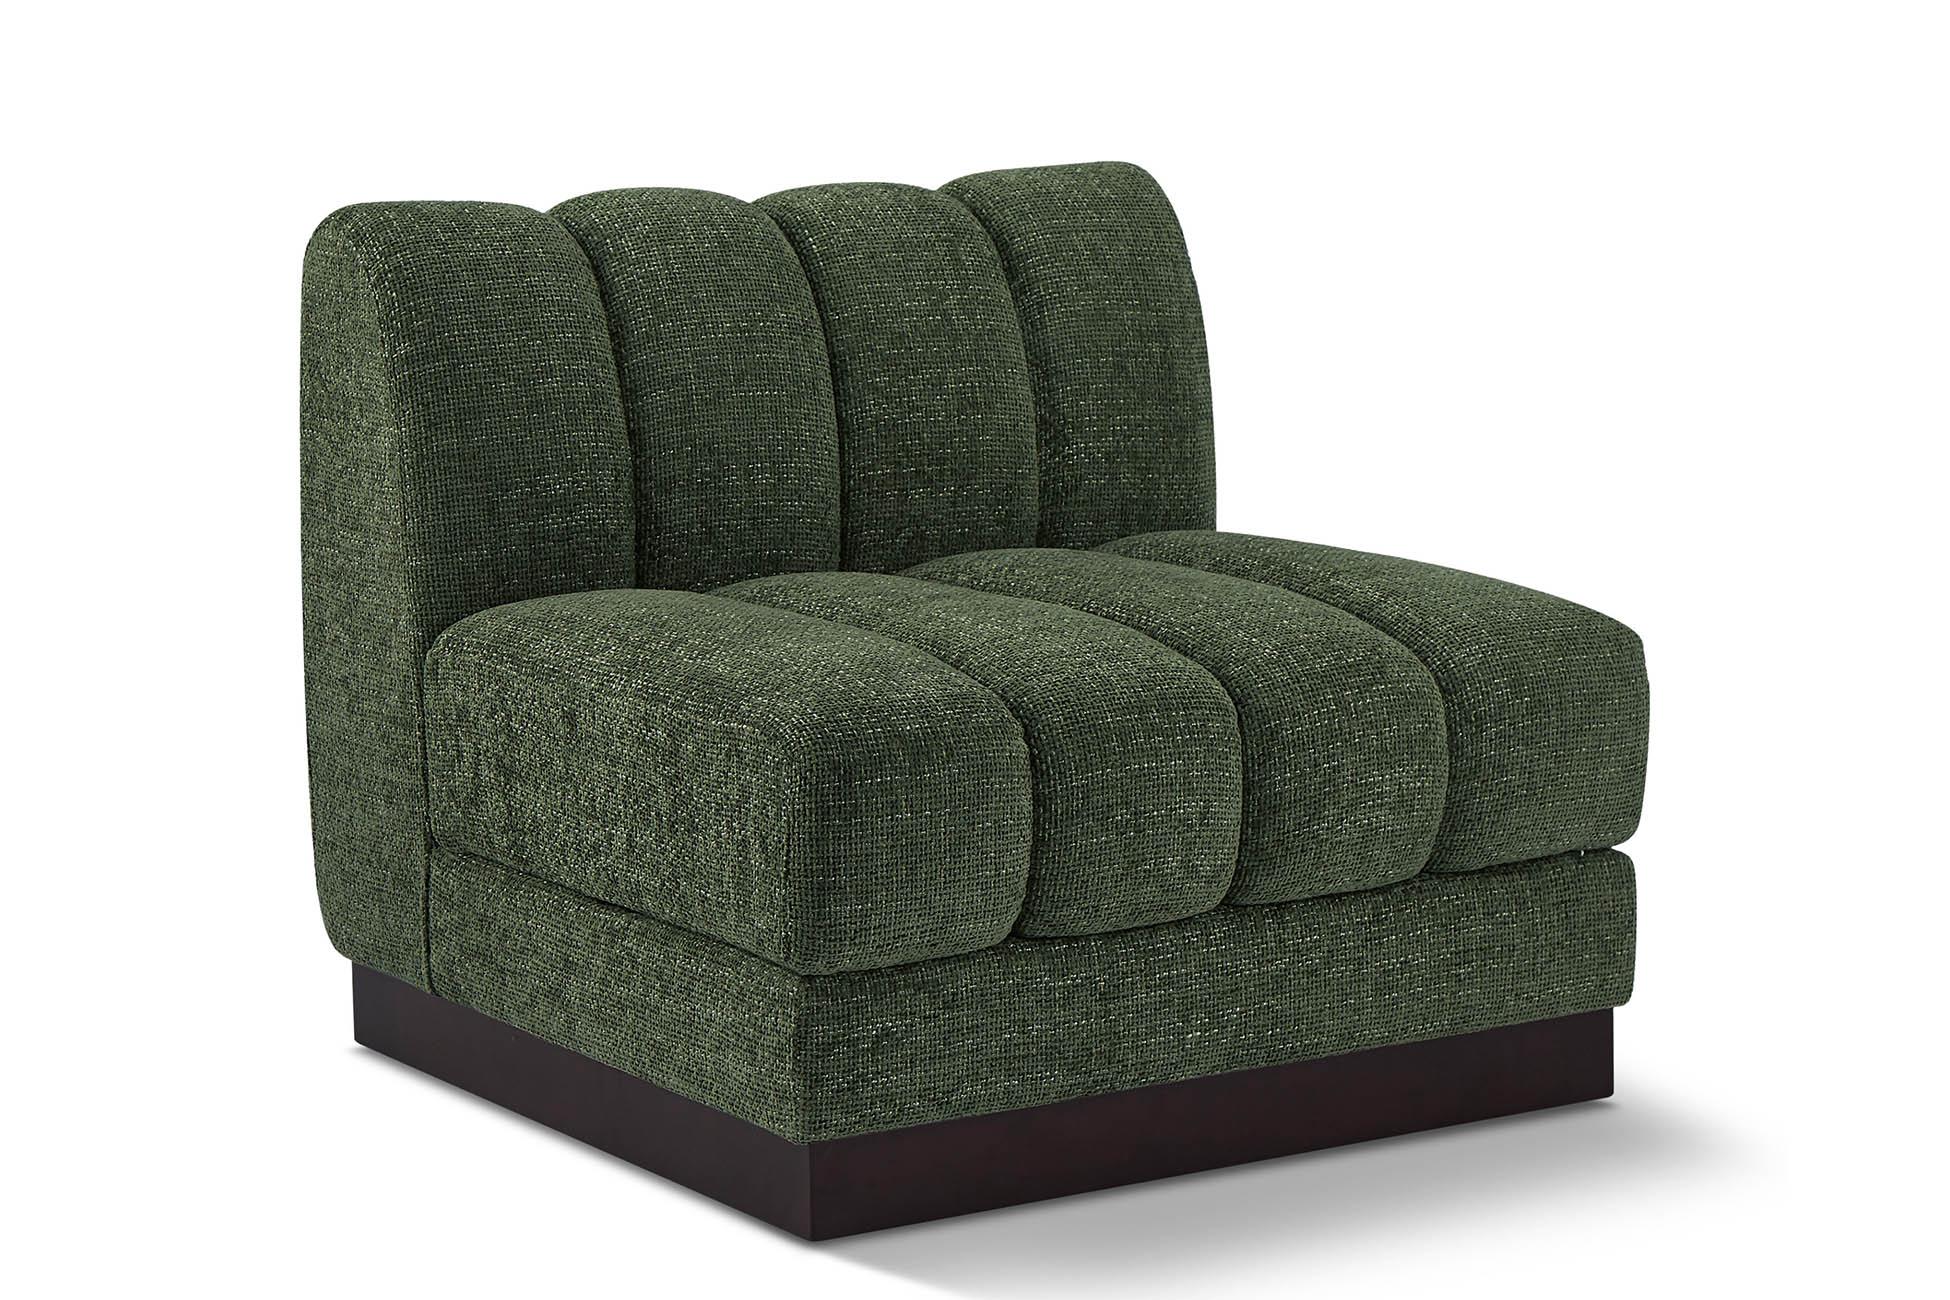 Contemporary, Modern Armless Chair QUINN 124Green-Armless 124Green-Armless in Green Chenille